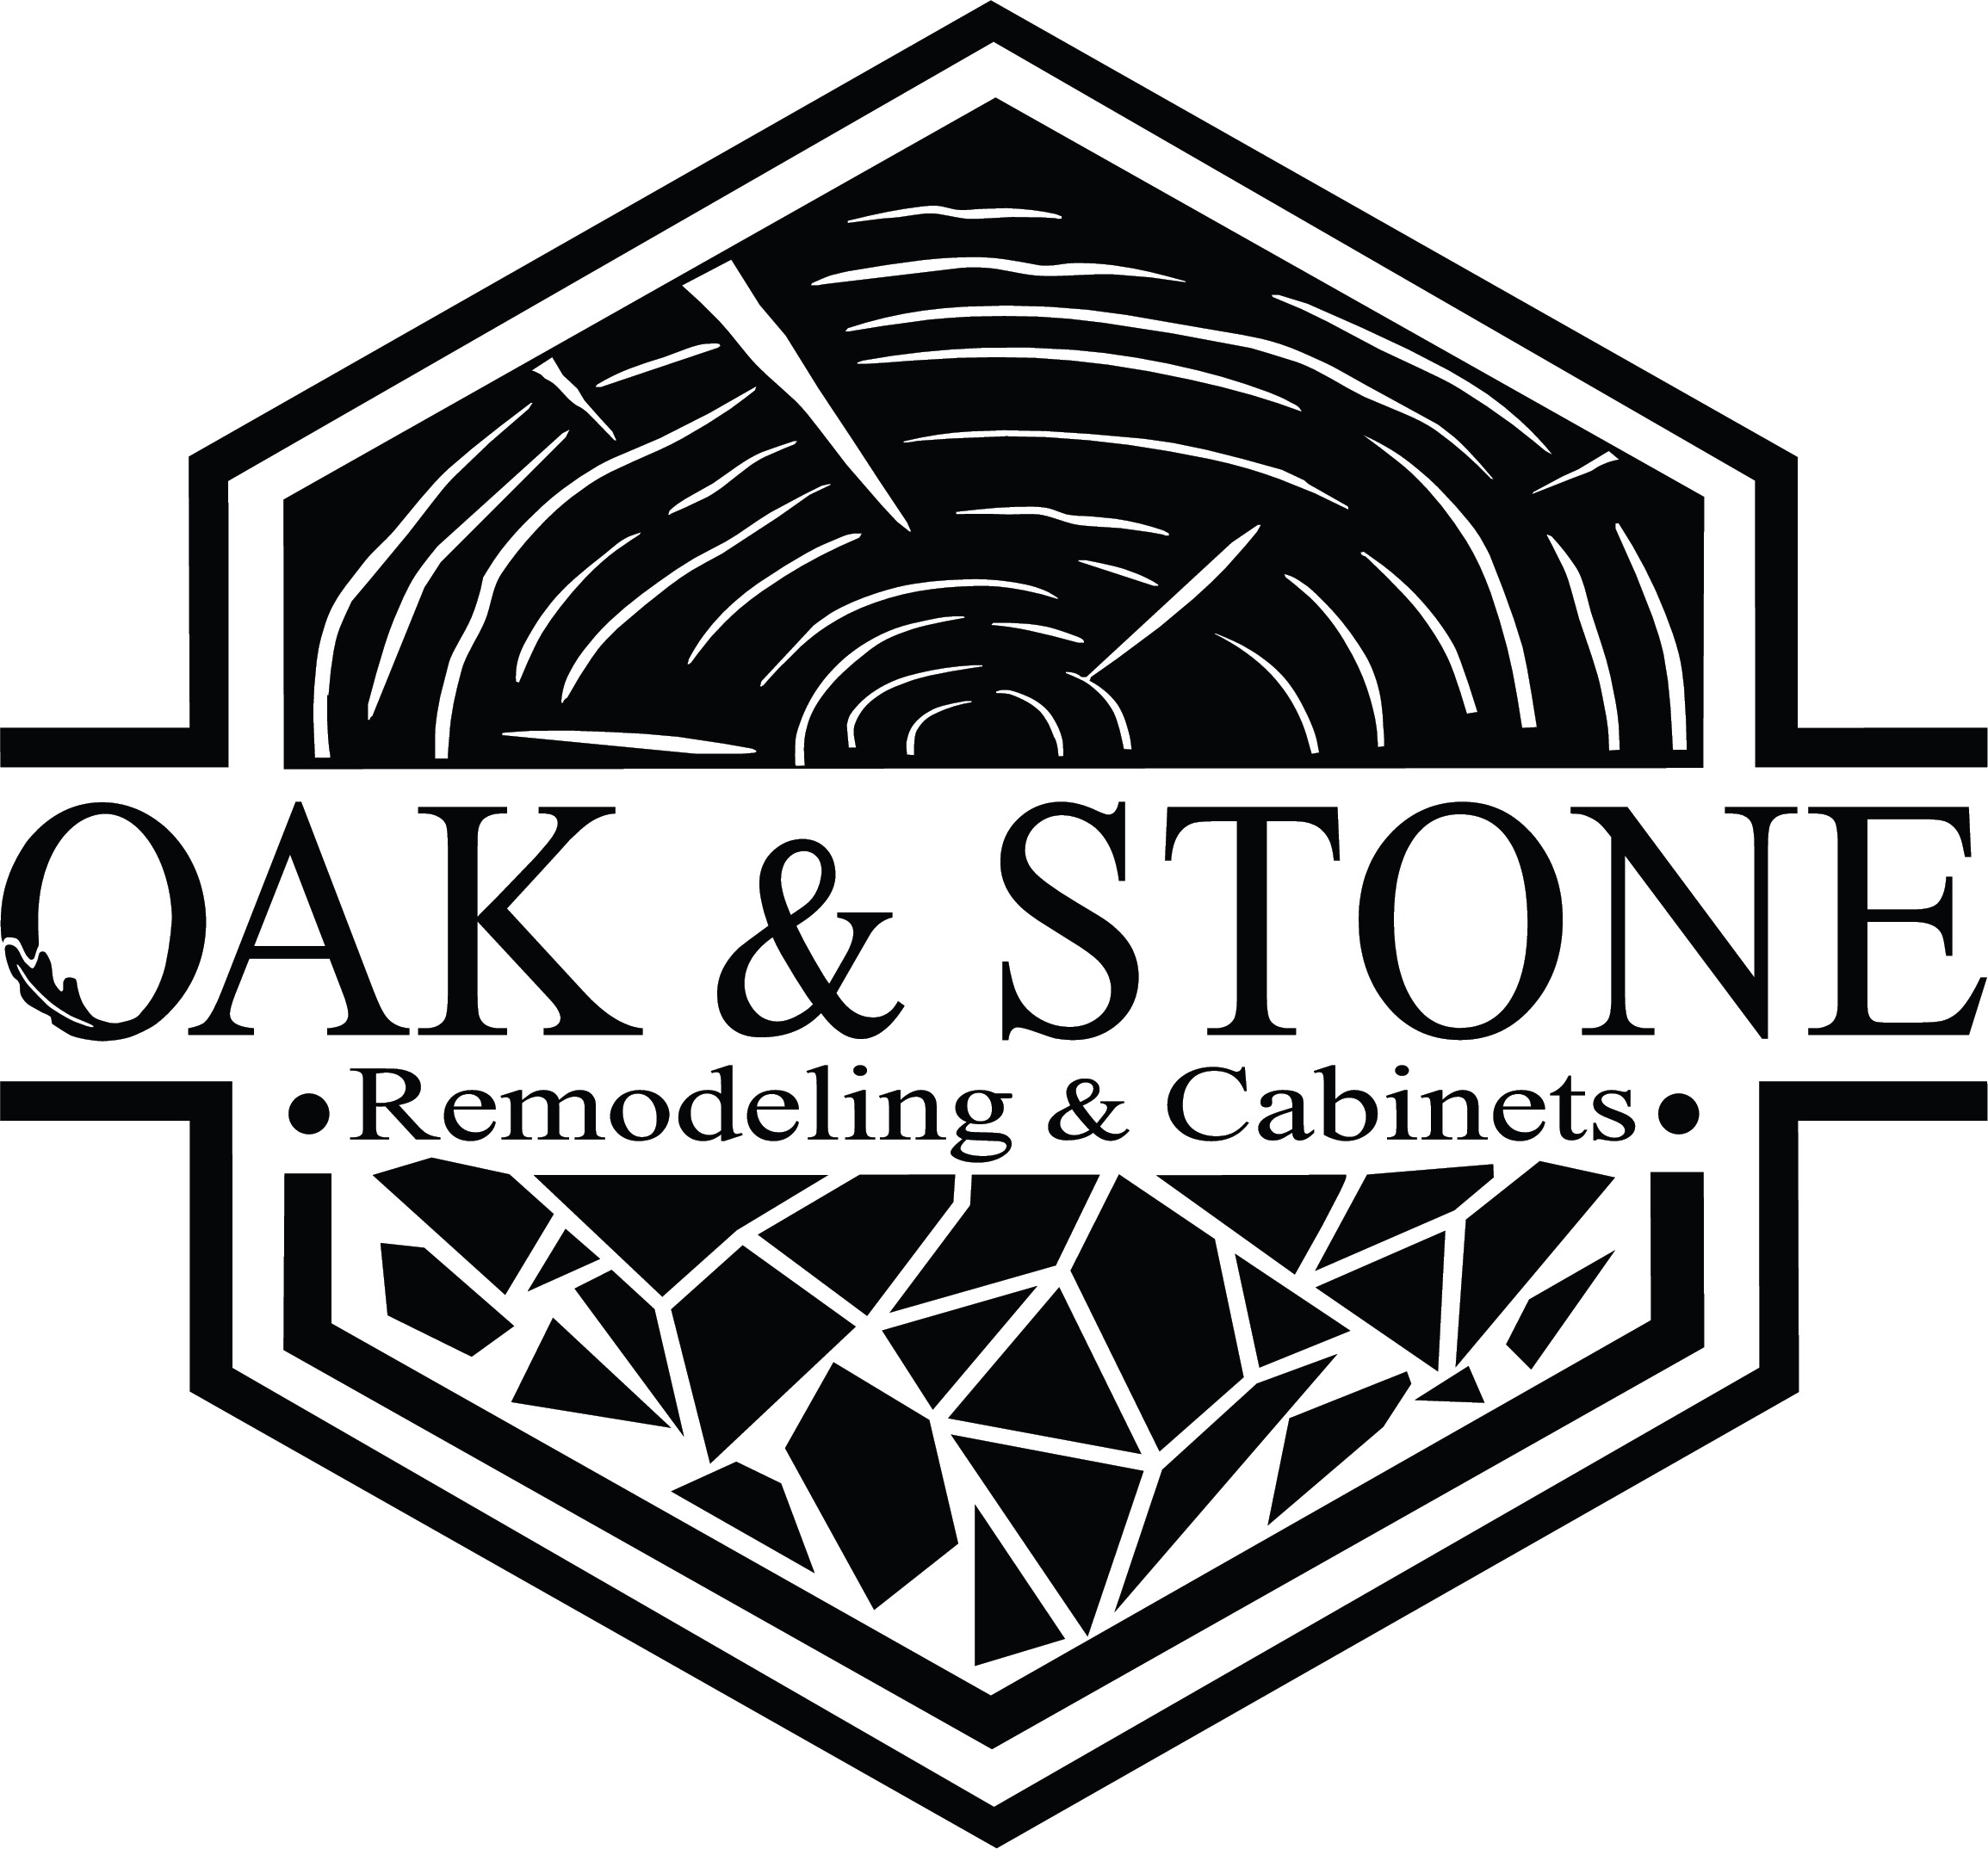 oak & stone remodeling